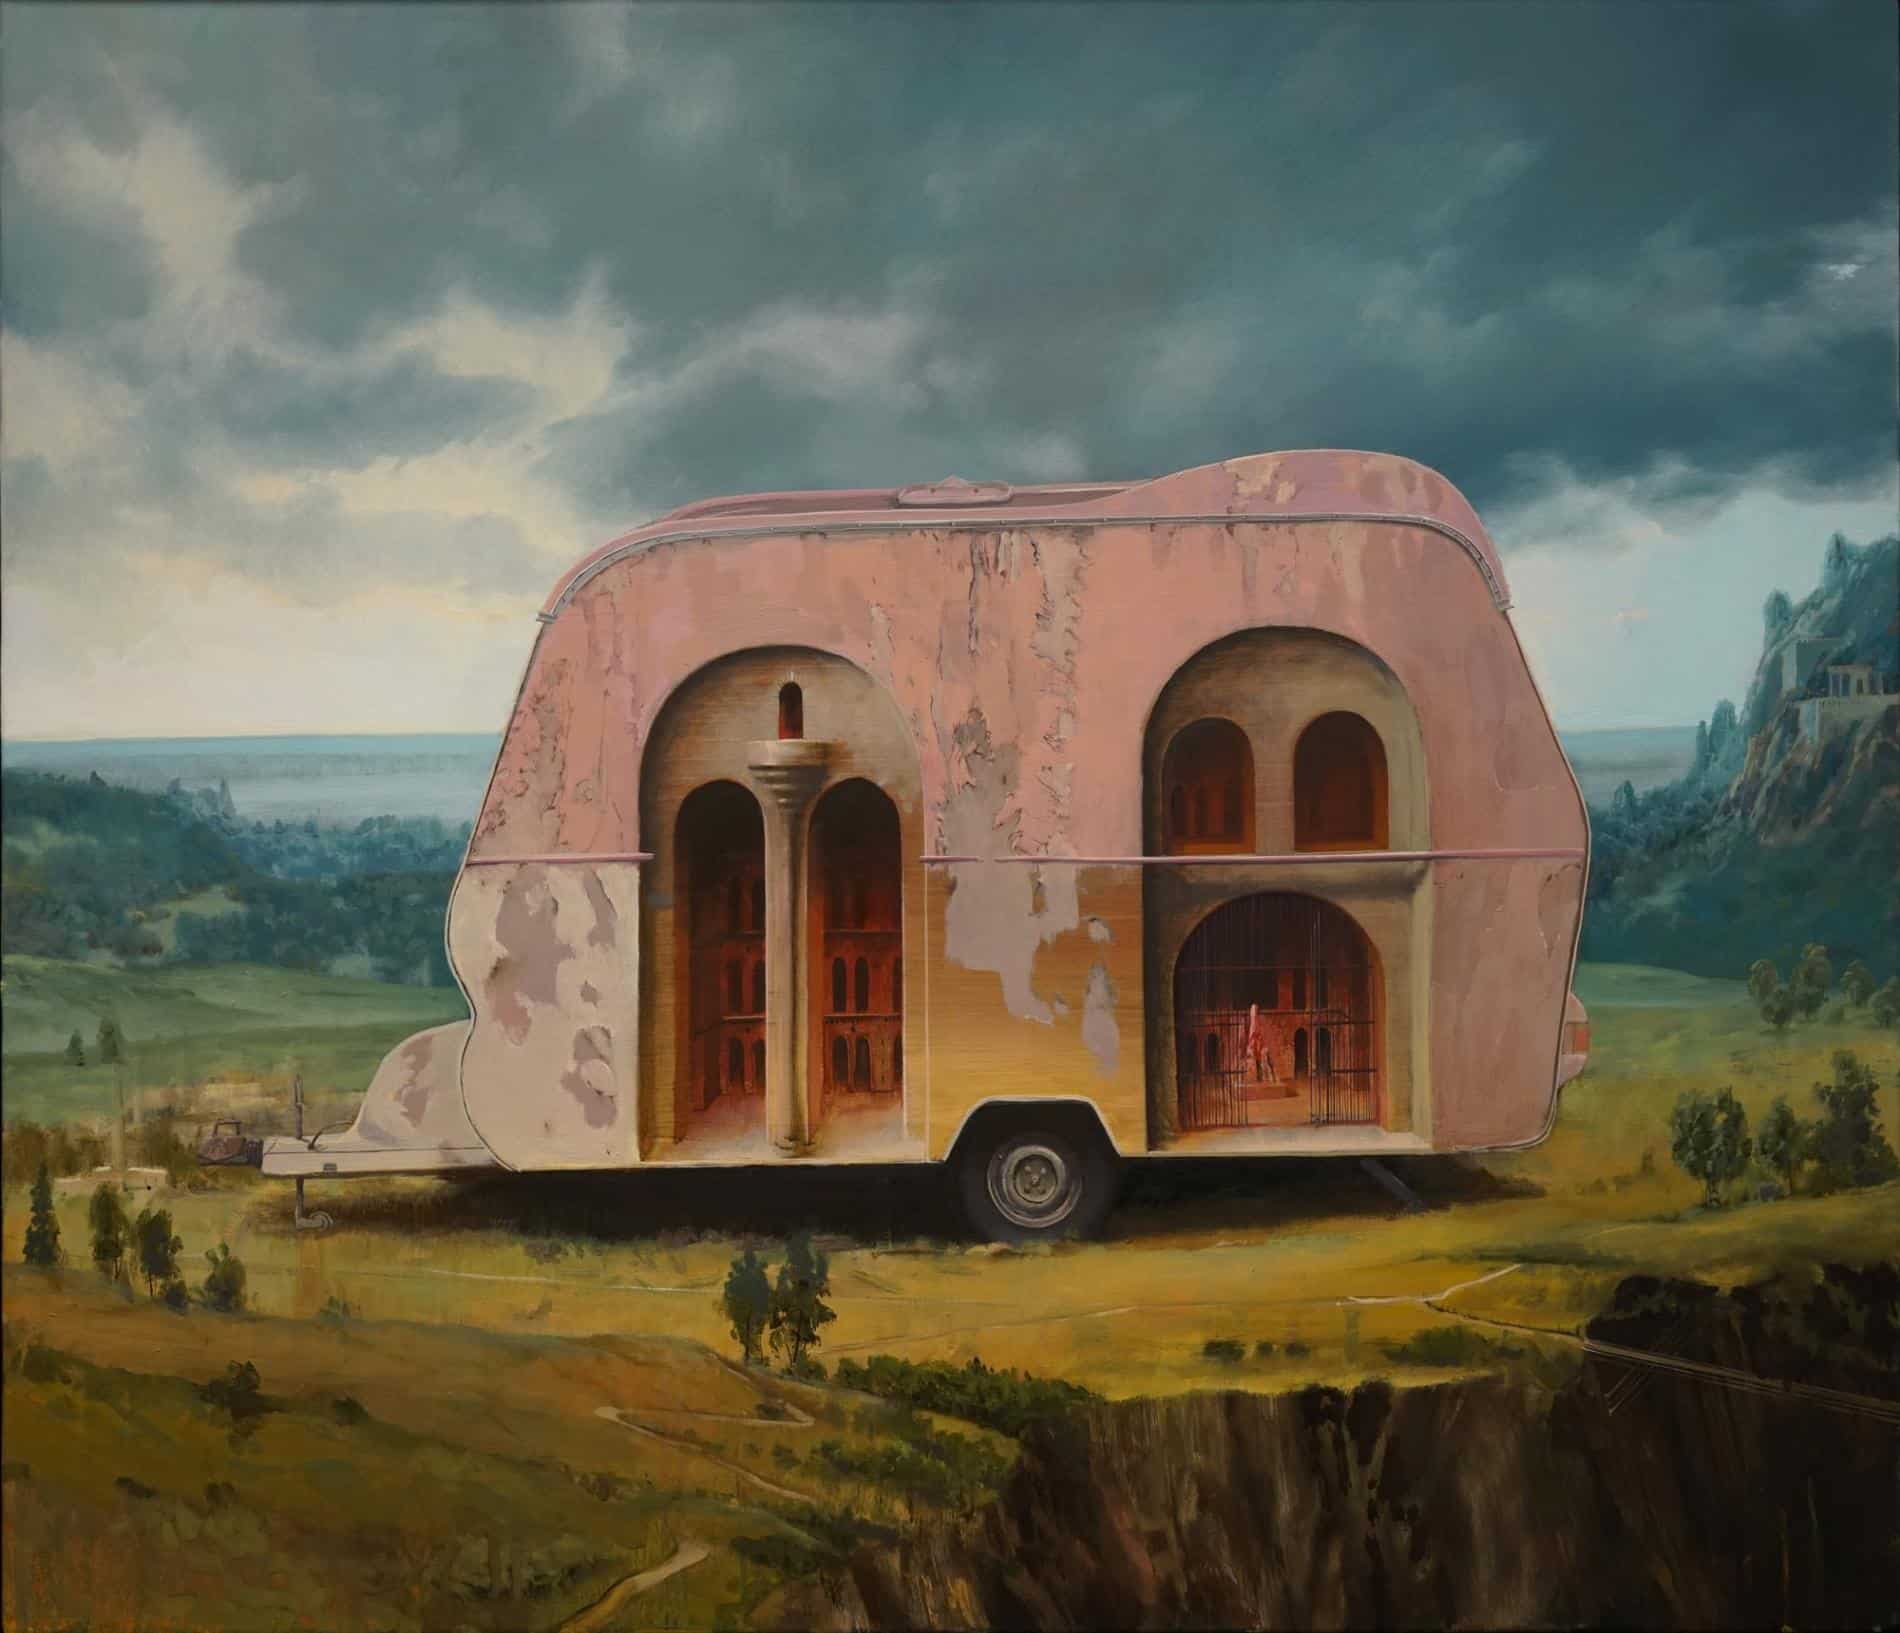 Pintura de una caravana con el efecto óptico hacia una estructura antigua